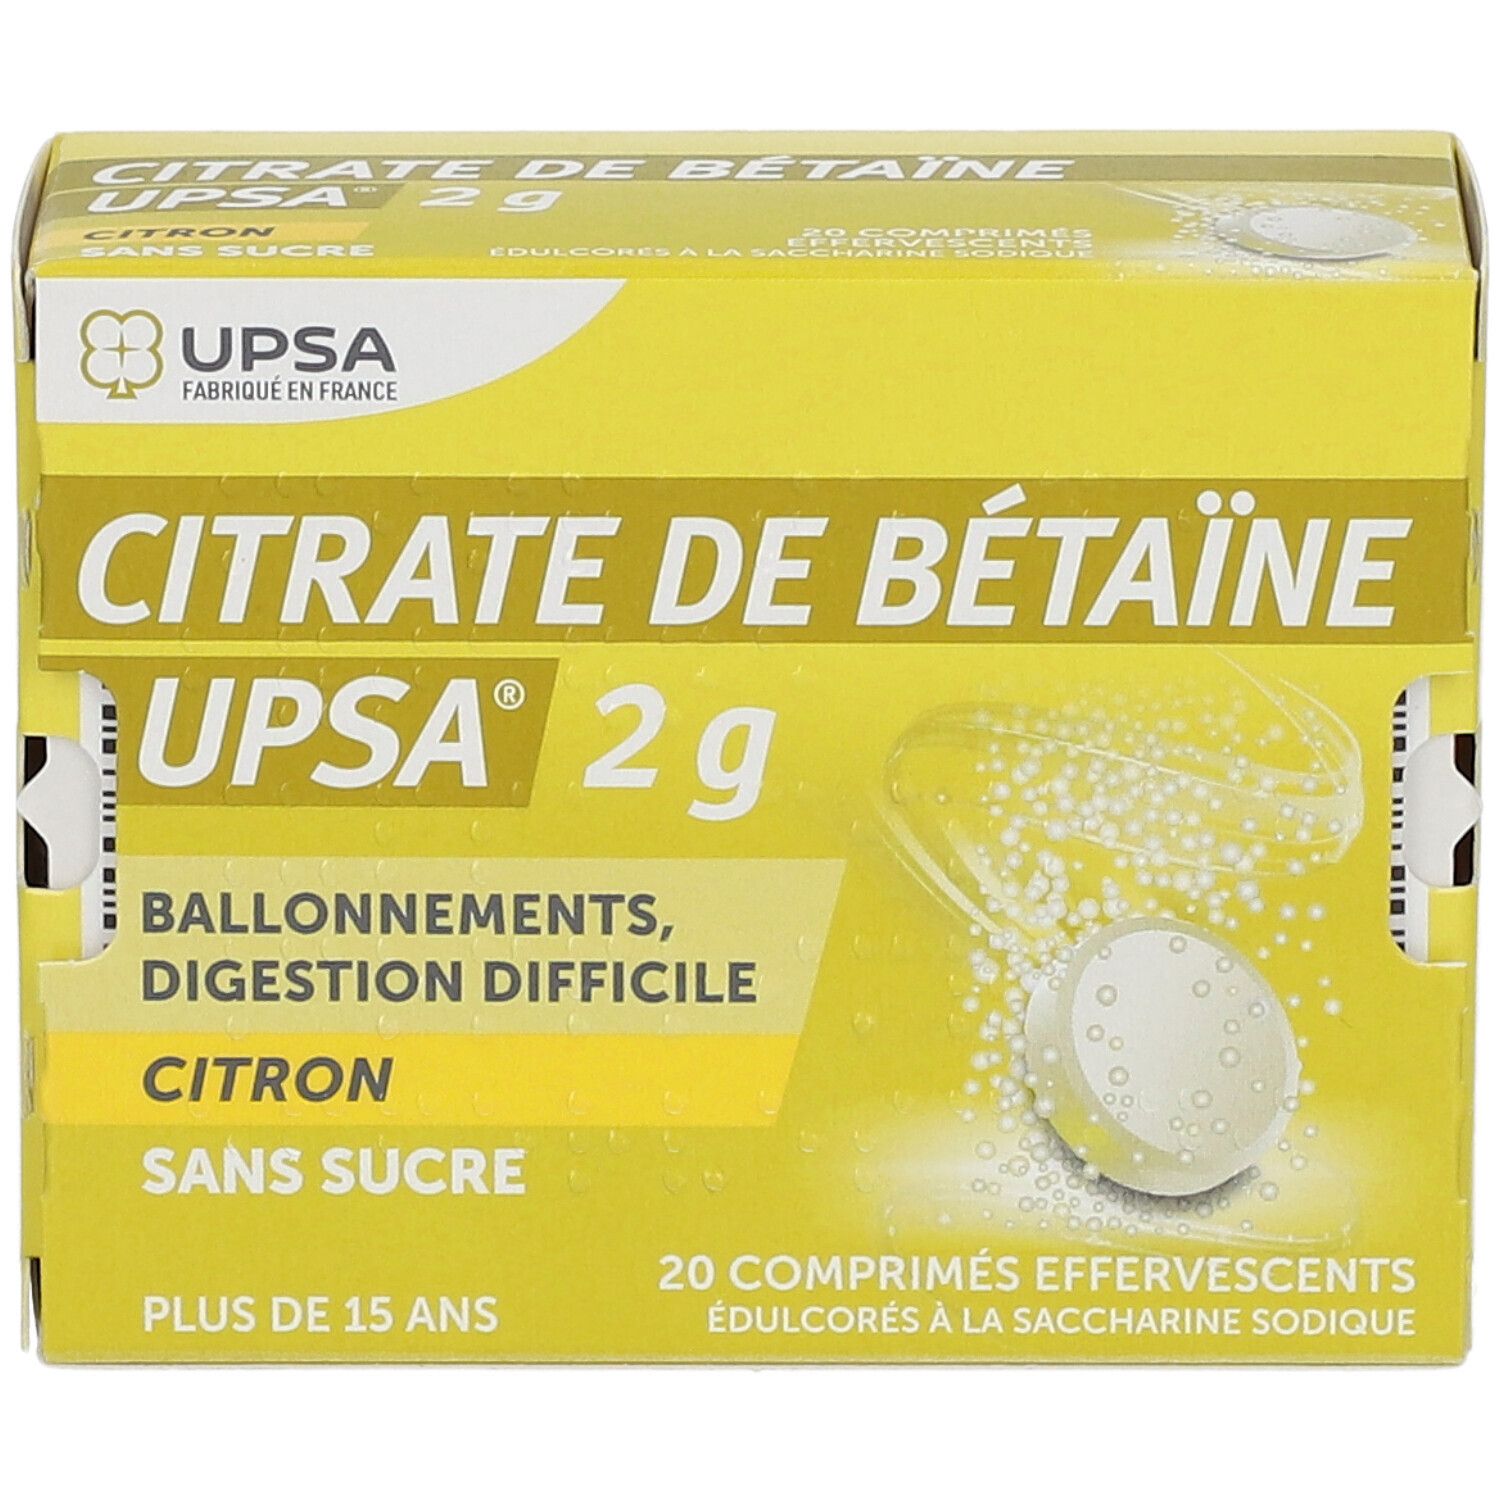 CITRATE DE BETAINE CITRON UPSA 2G SANS SUCRE, comprimé effervescent édulcoré à la saccharine sodique